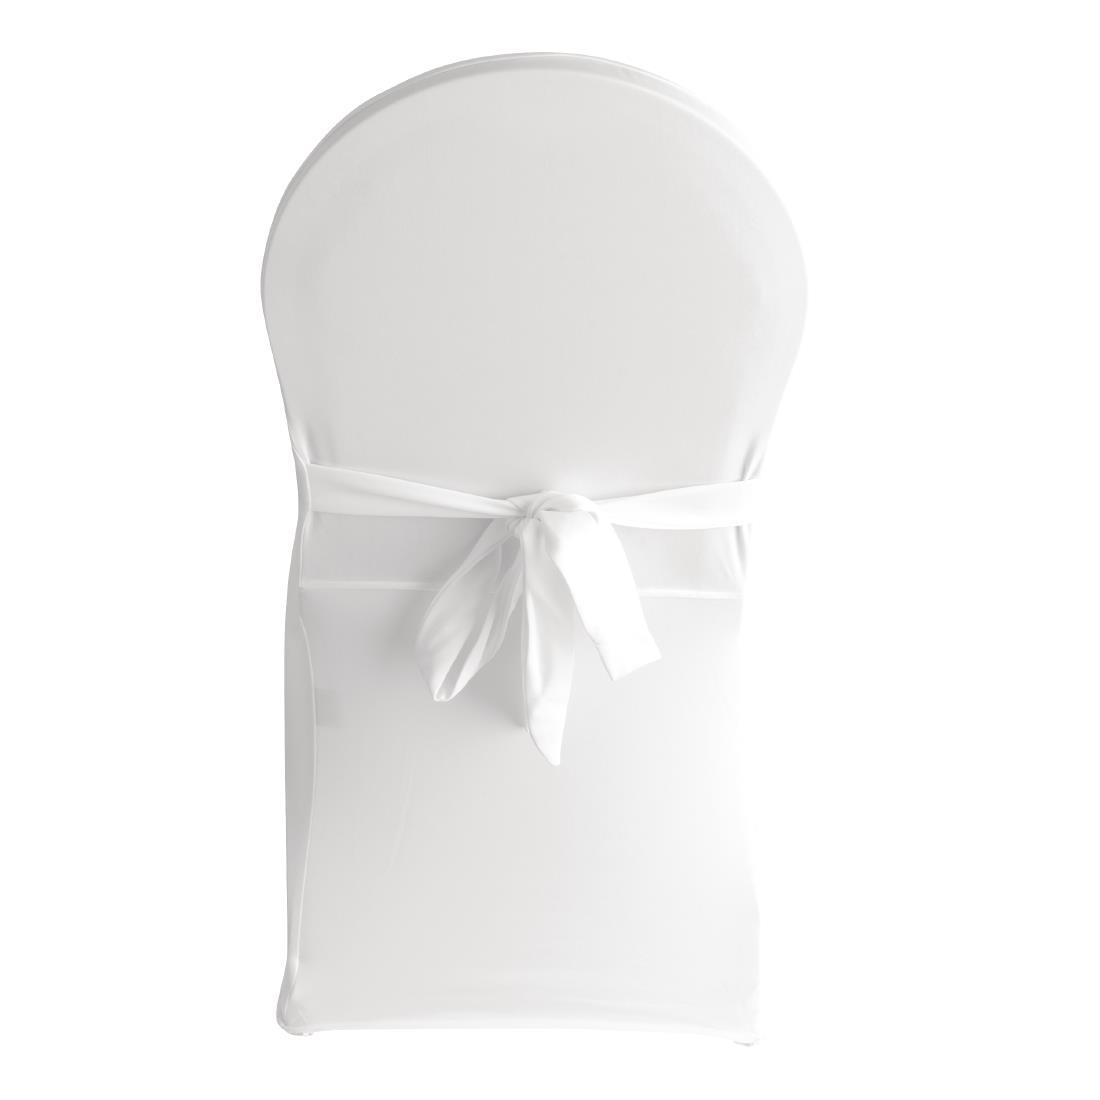 Bolero Banquet Chair Cover White - DP924  - 3